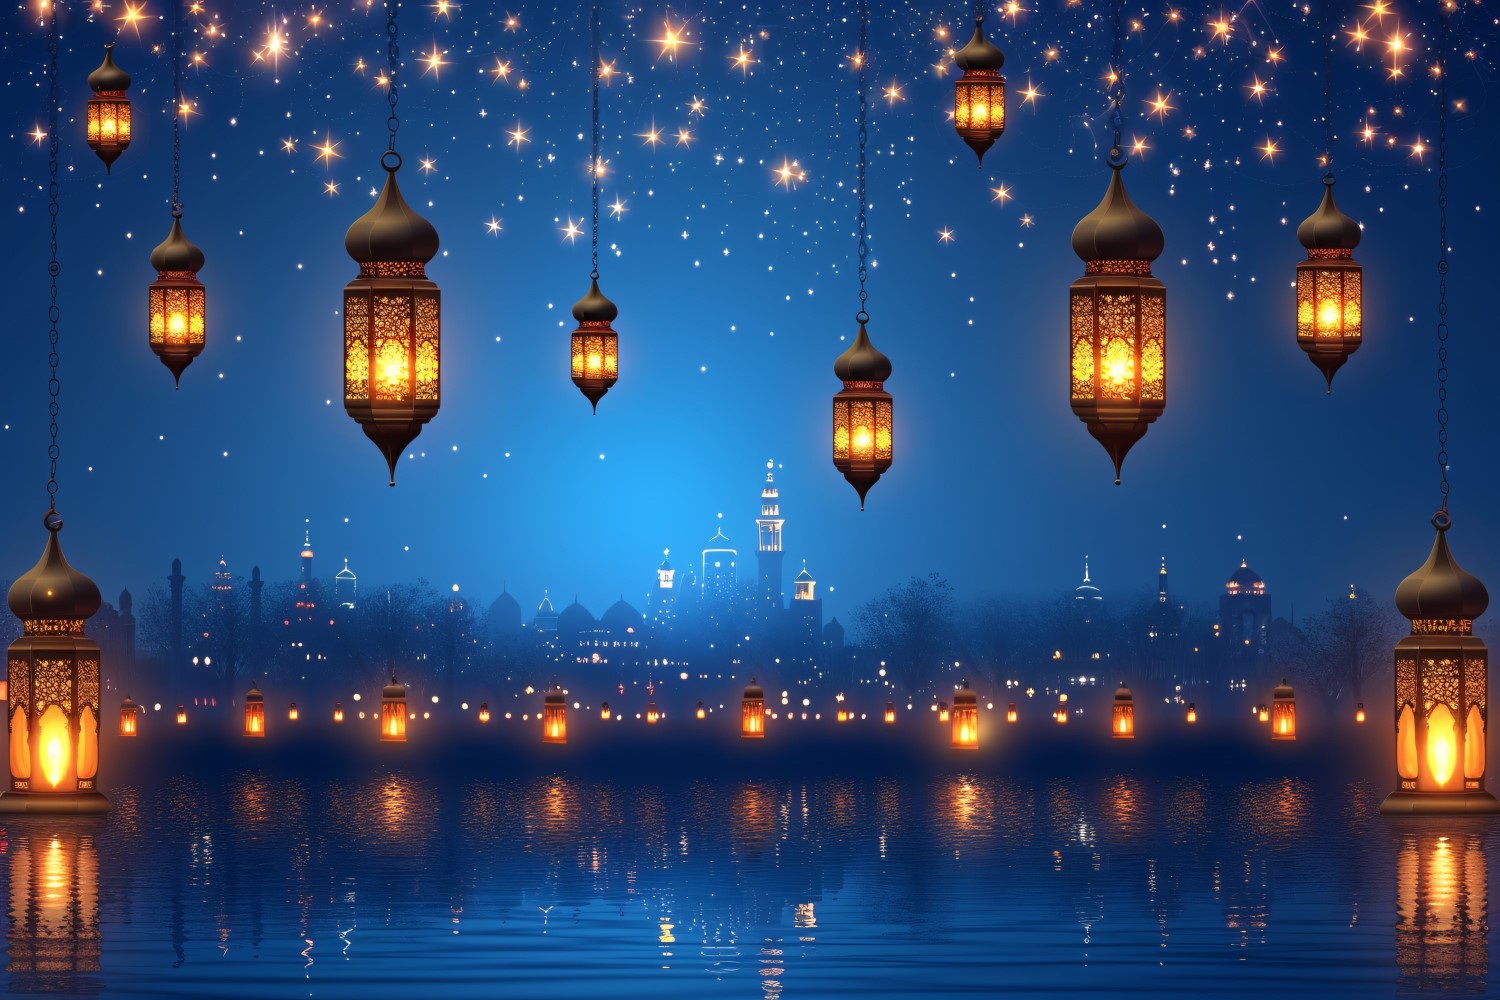 Ramadan Kareem greeting card banner design with lantern & star